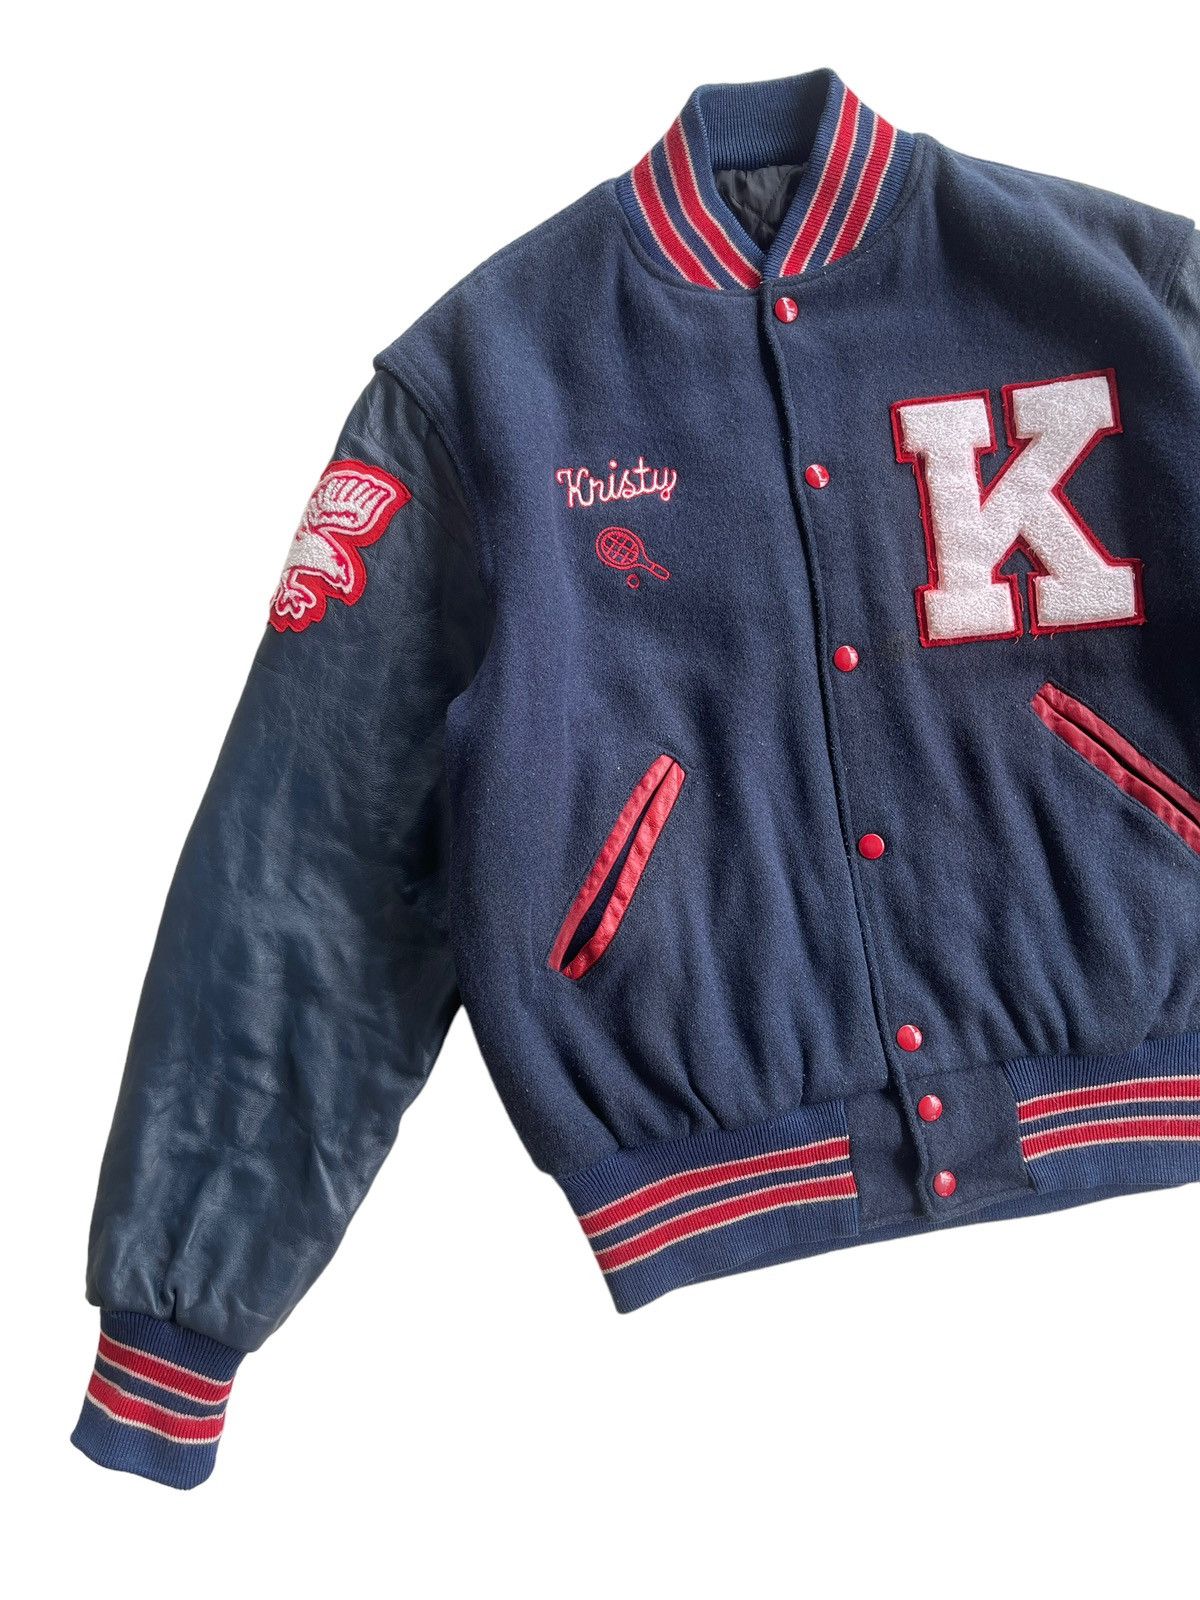 Vintage Vintage 70s Delong Kennedy Varsity Jacket Size US M / EU 48-50 / 2 - 4 Thumbnail